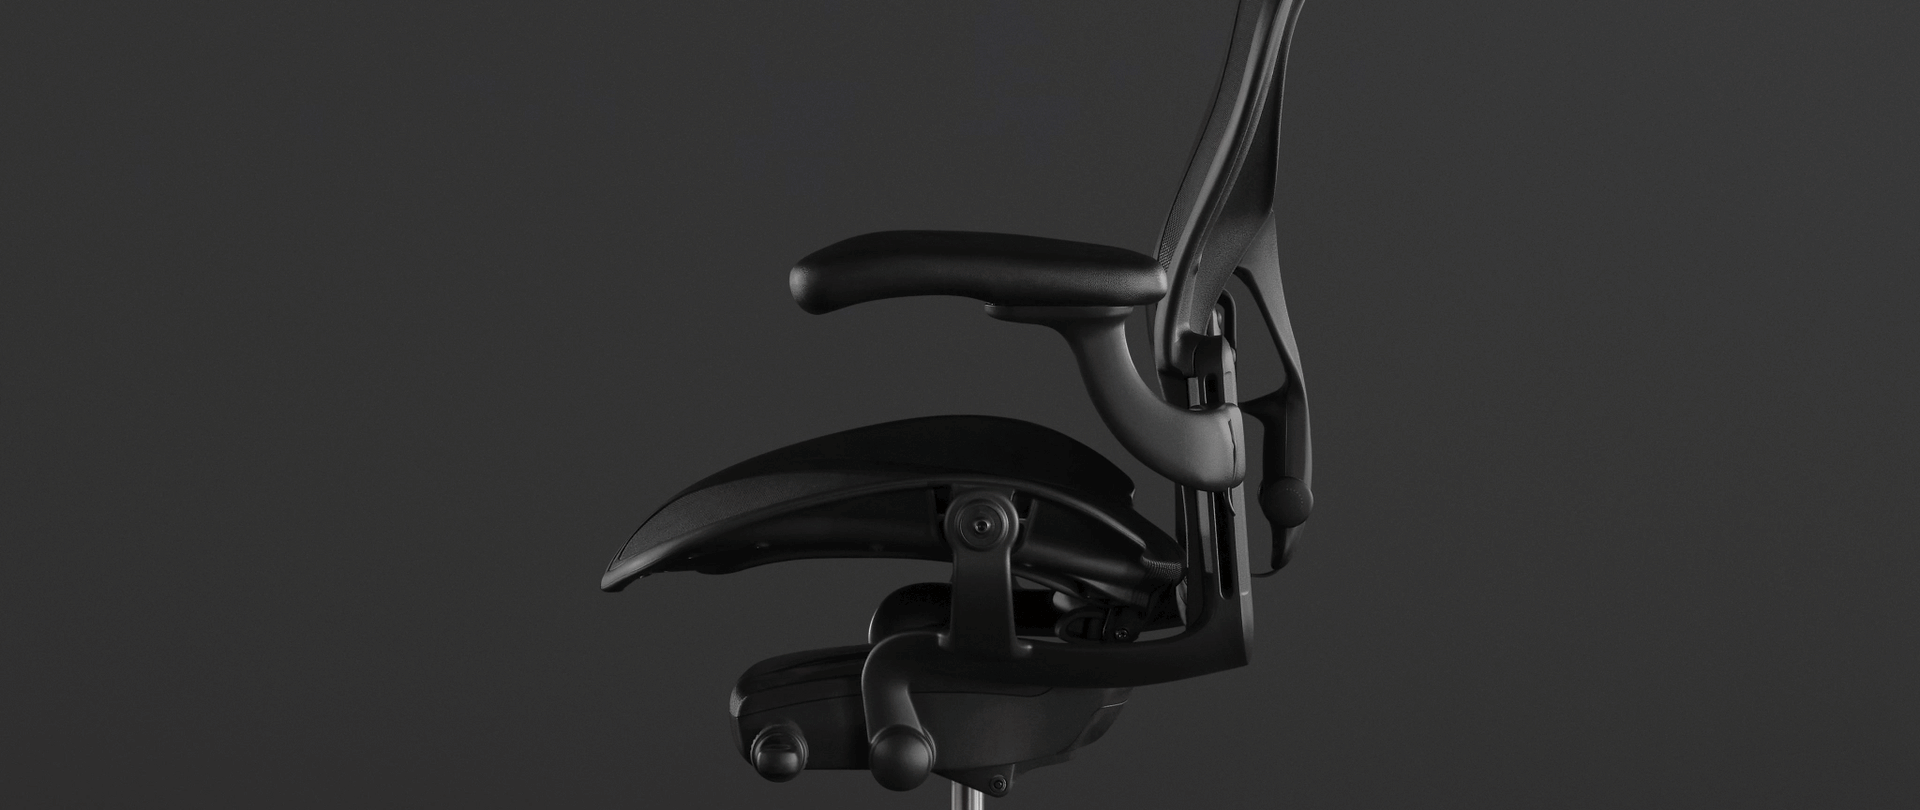 Une animation sur la photo d’un siège Aeron noir montre comment l’inclinaison avant du siège vous permet de garder une posture optimale en ayant toujours la colonne vertébrale bien maintenue.